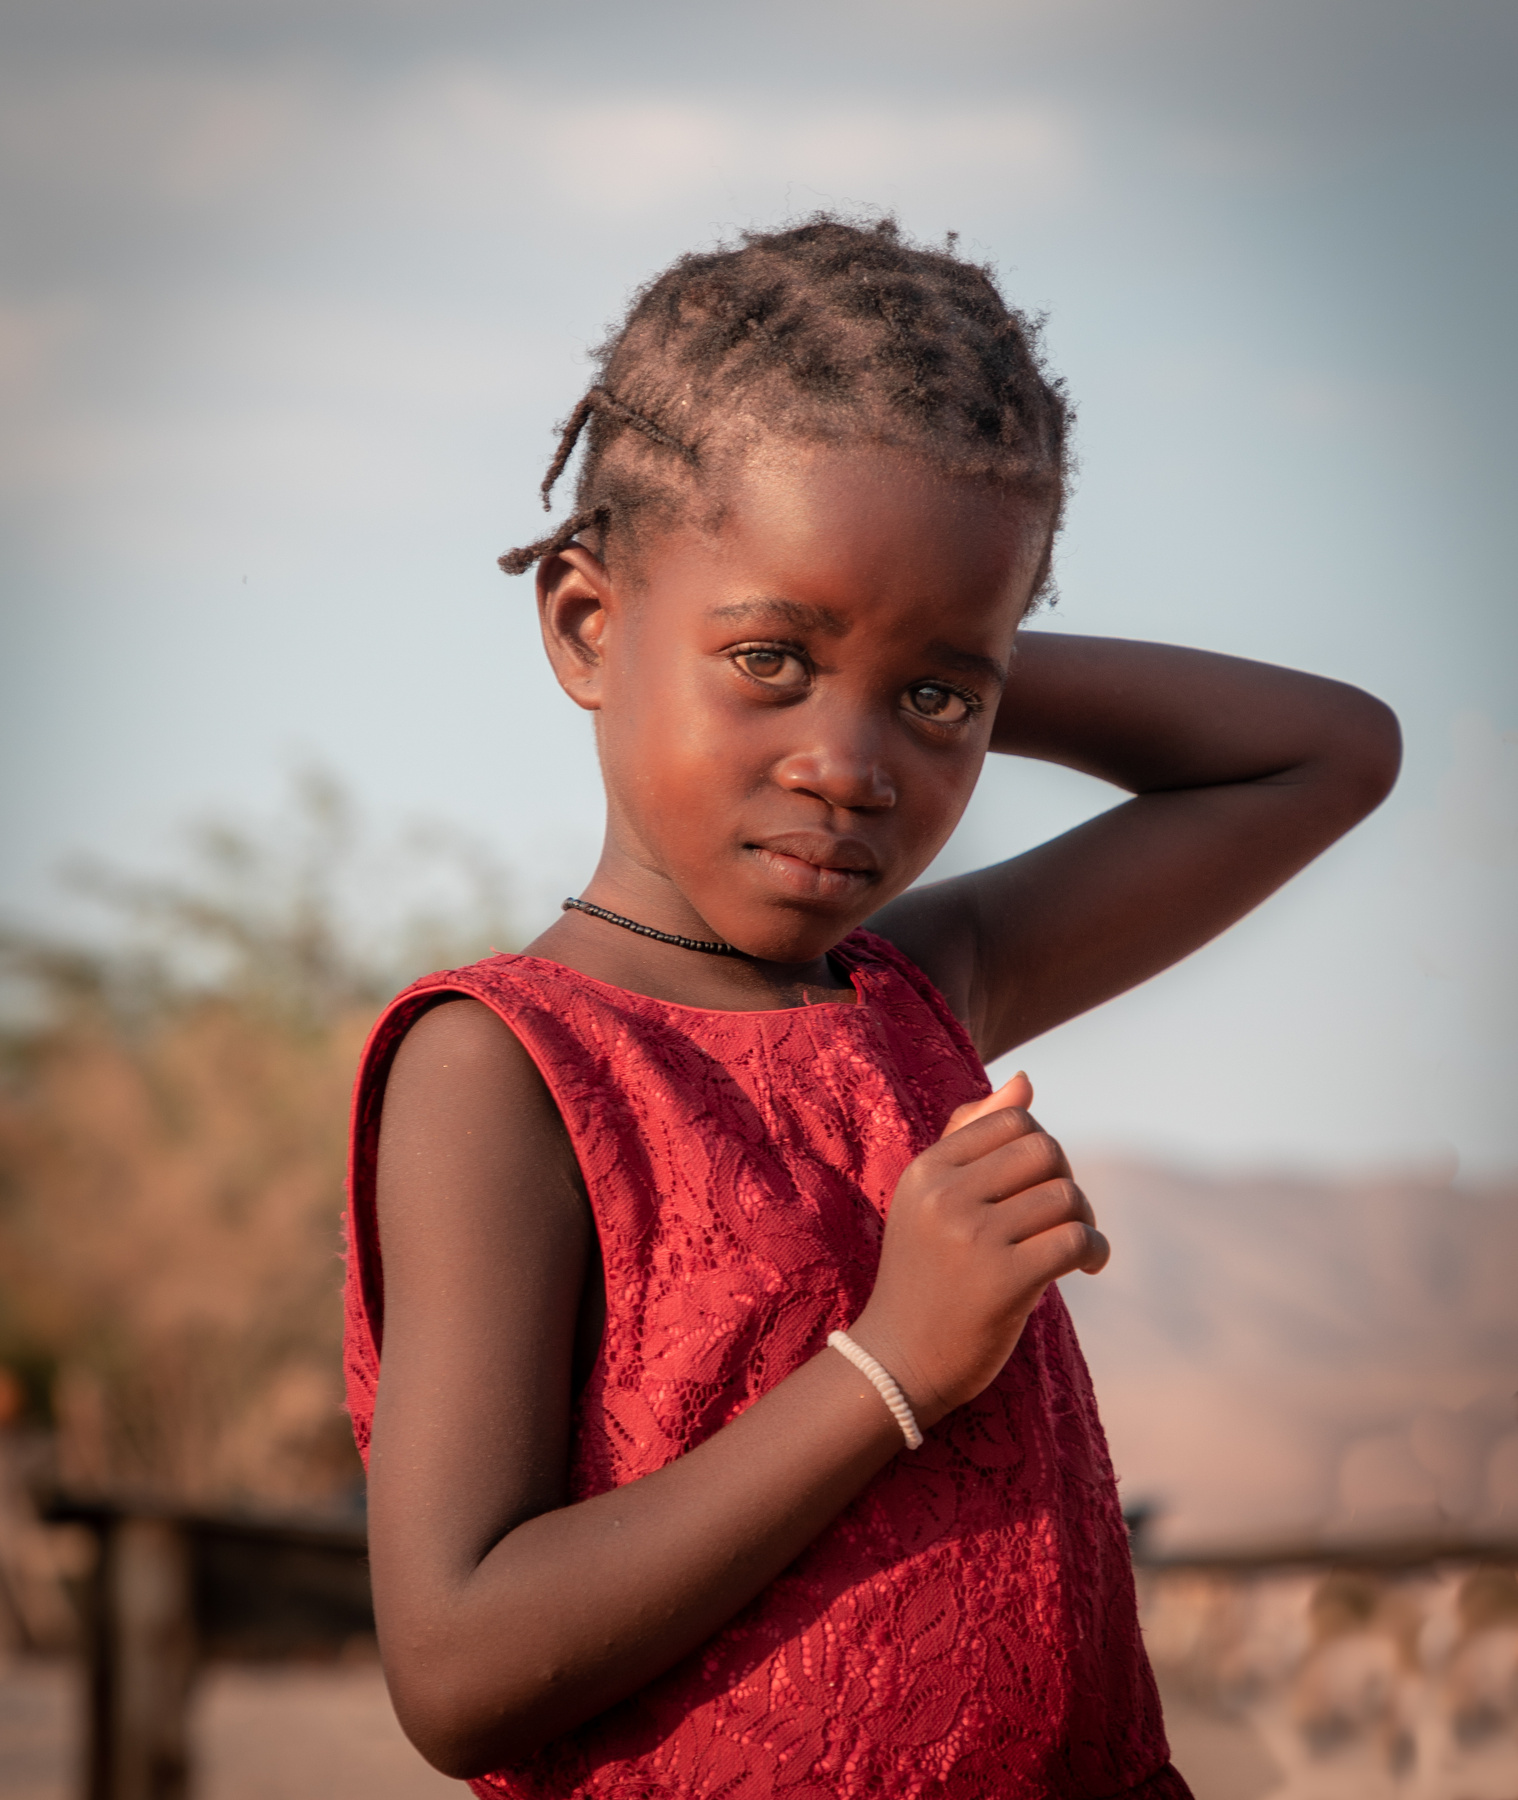 Девочка из племени гереро, Намибия африка намибия портрет женский девочка девушка